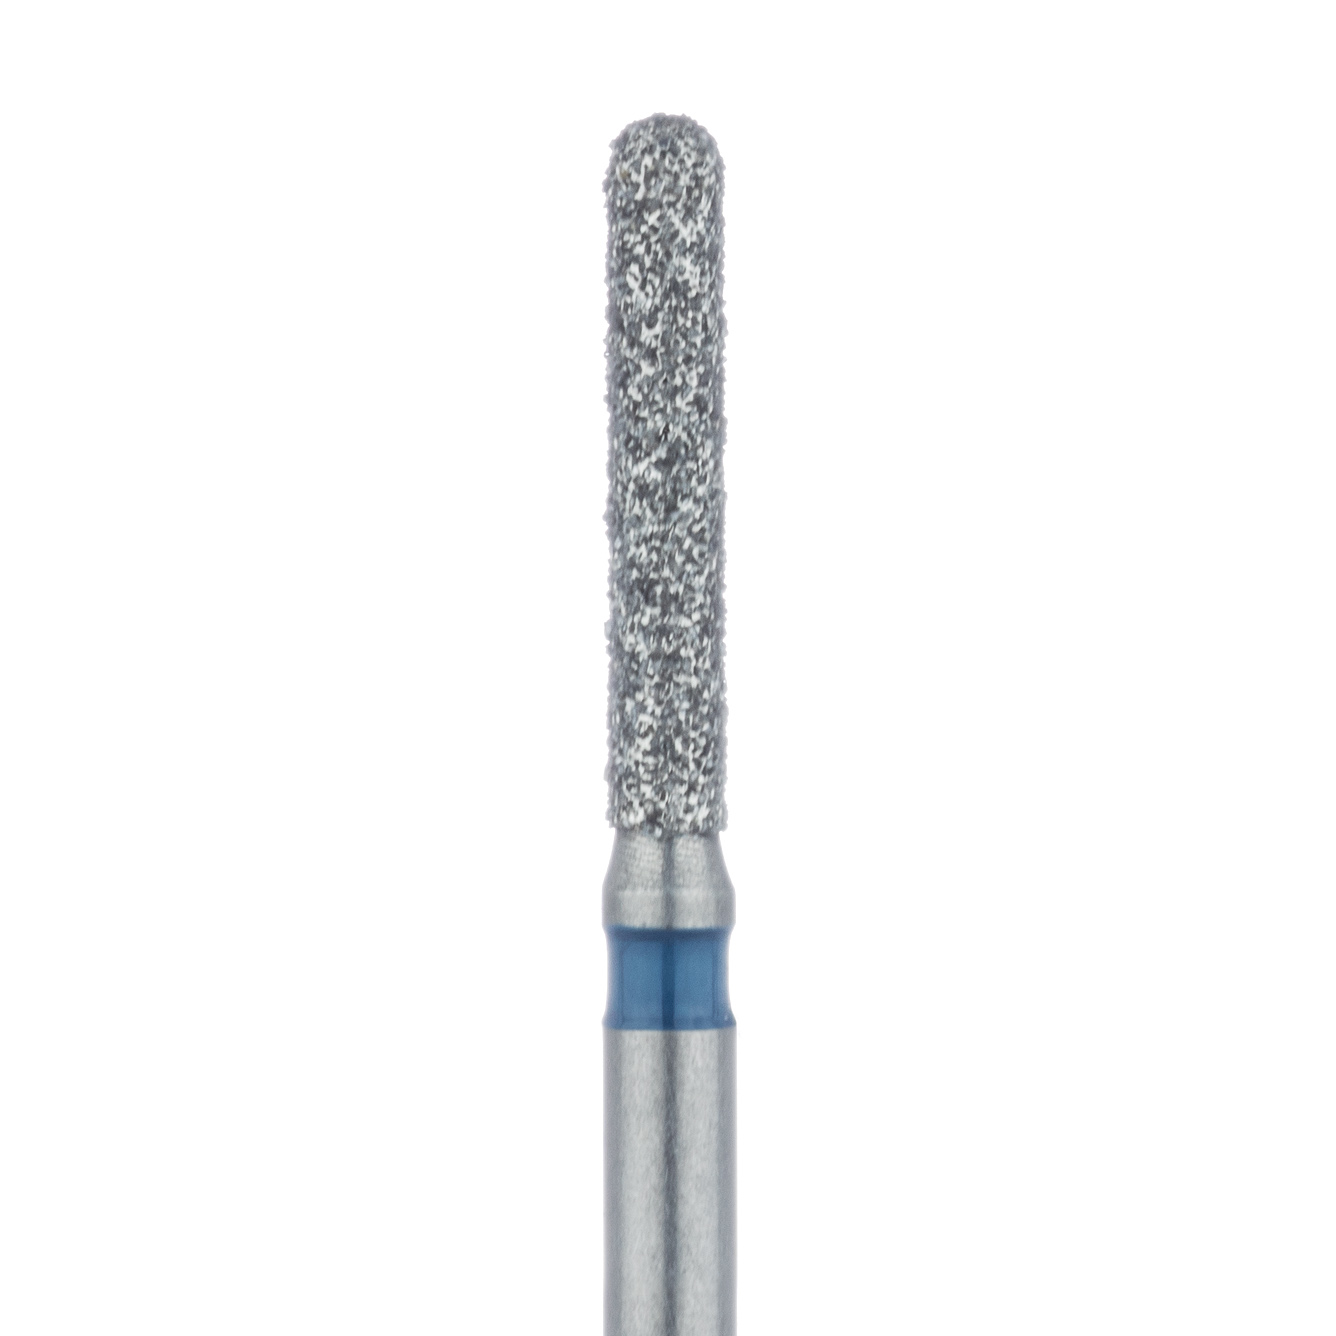 881-014-FG Round End Cylinder Diamond Bur, 1.4mm Ø, Medium, FG